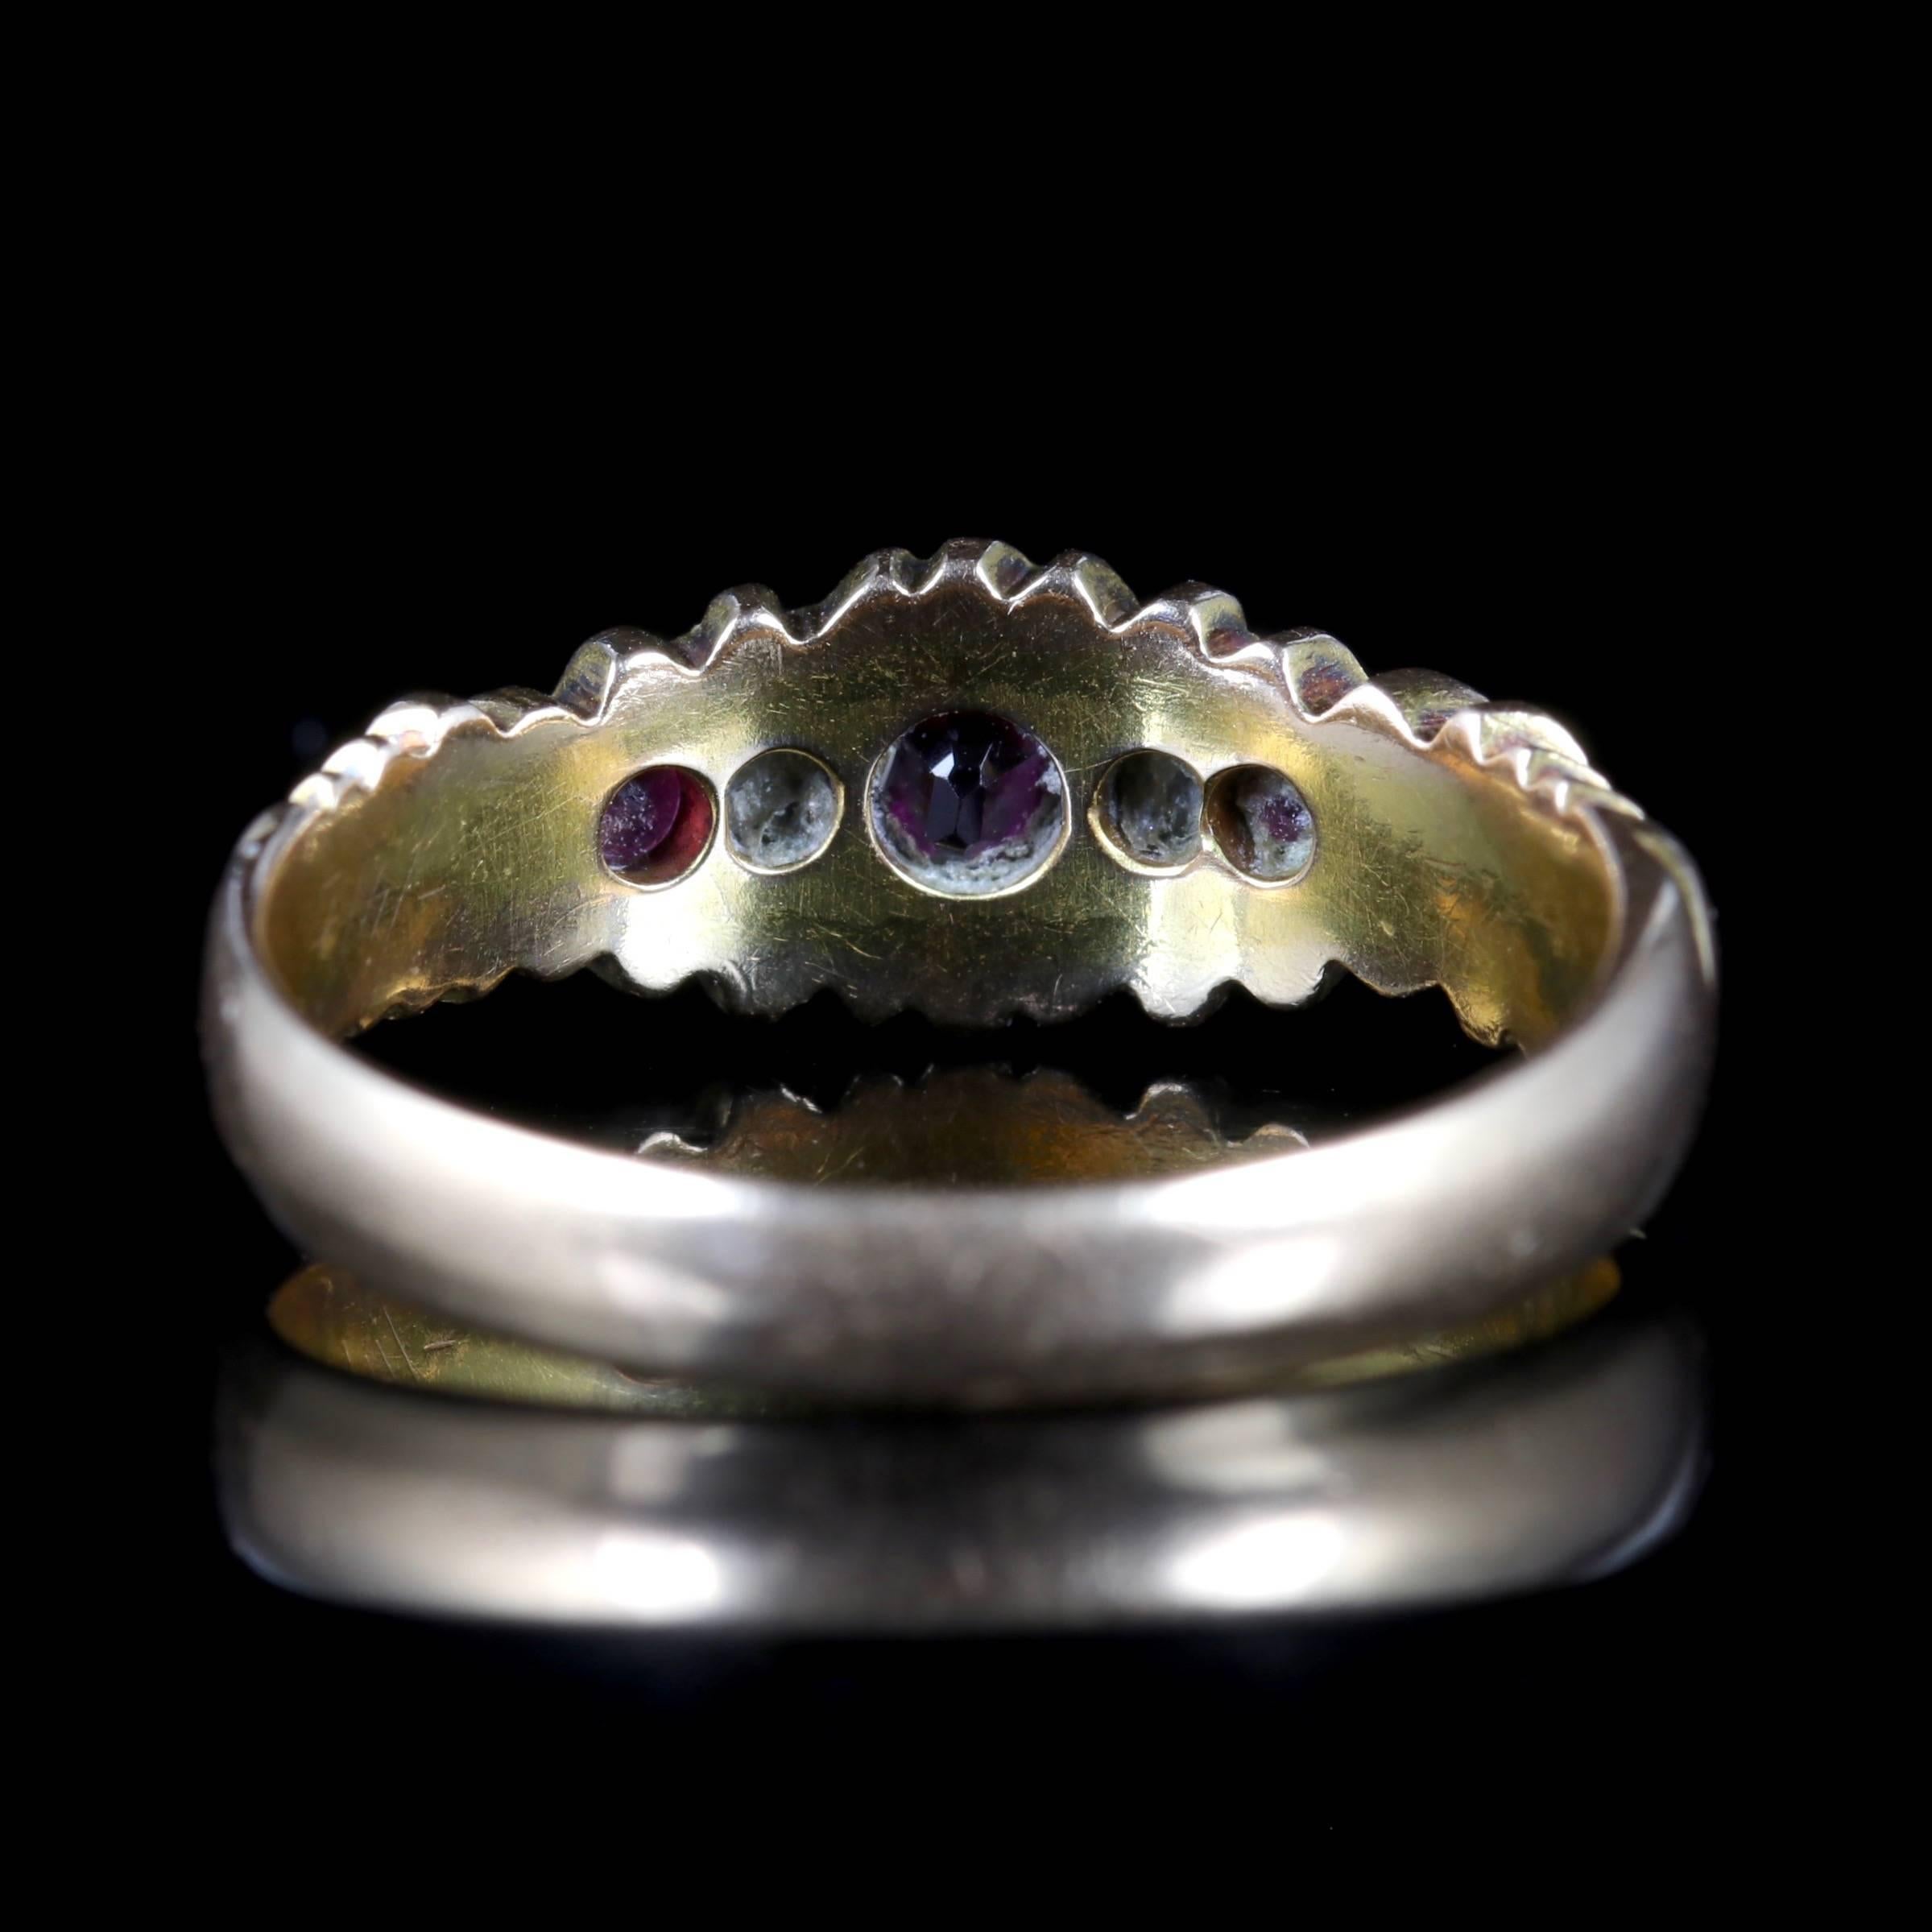 15 carat gold ring